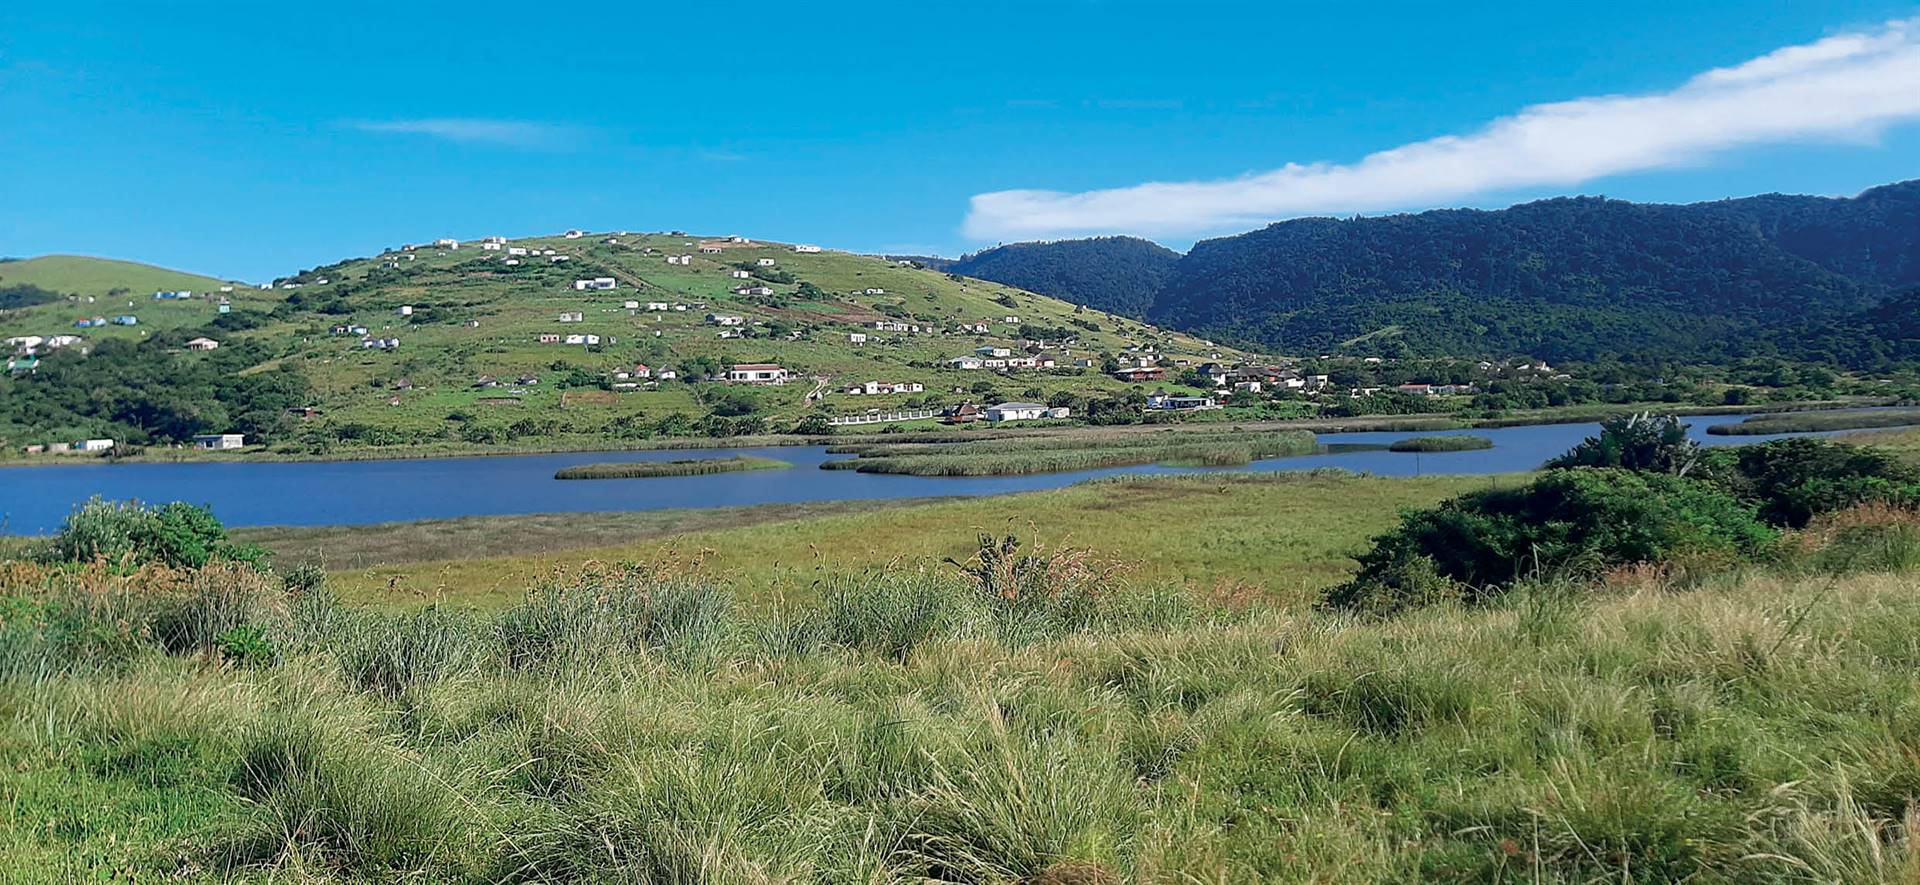 Die dorpie Mbotyi aan die Oos-Kaapse Wildekus. 